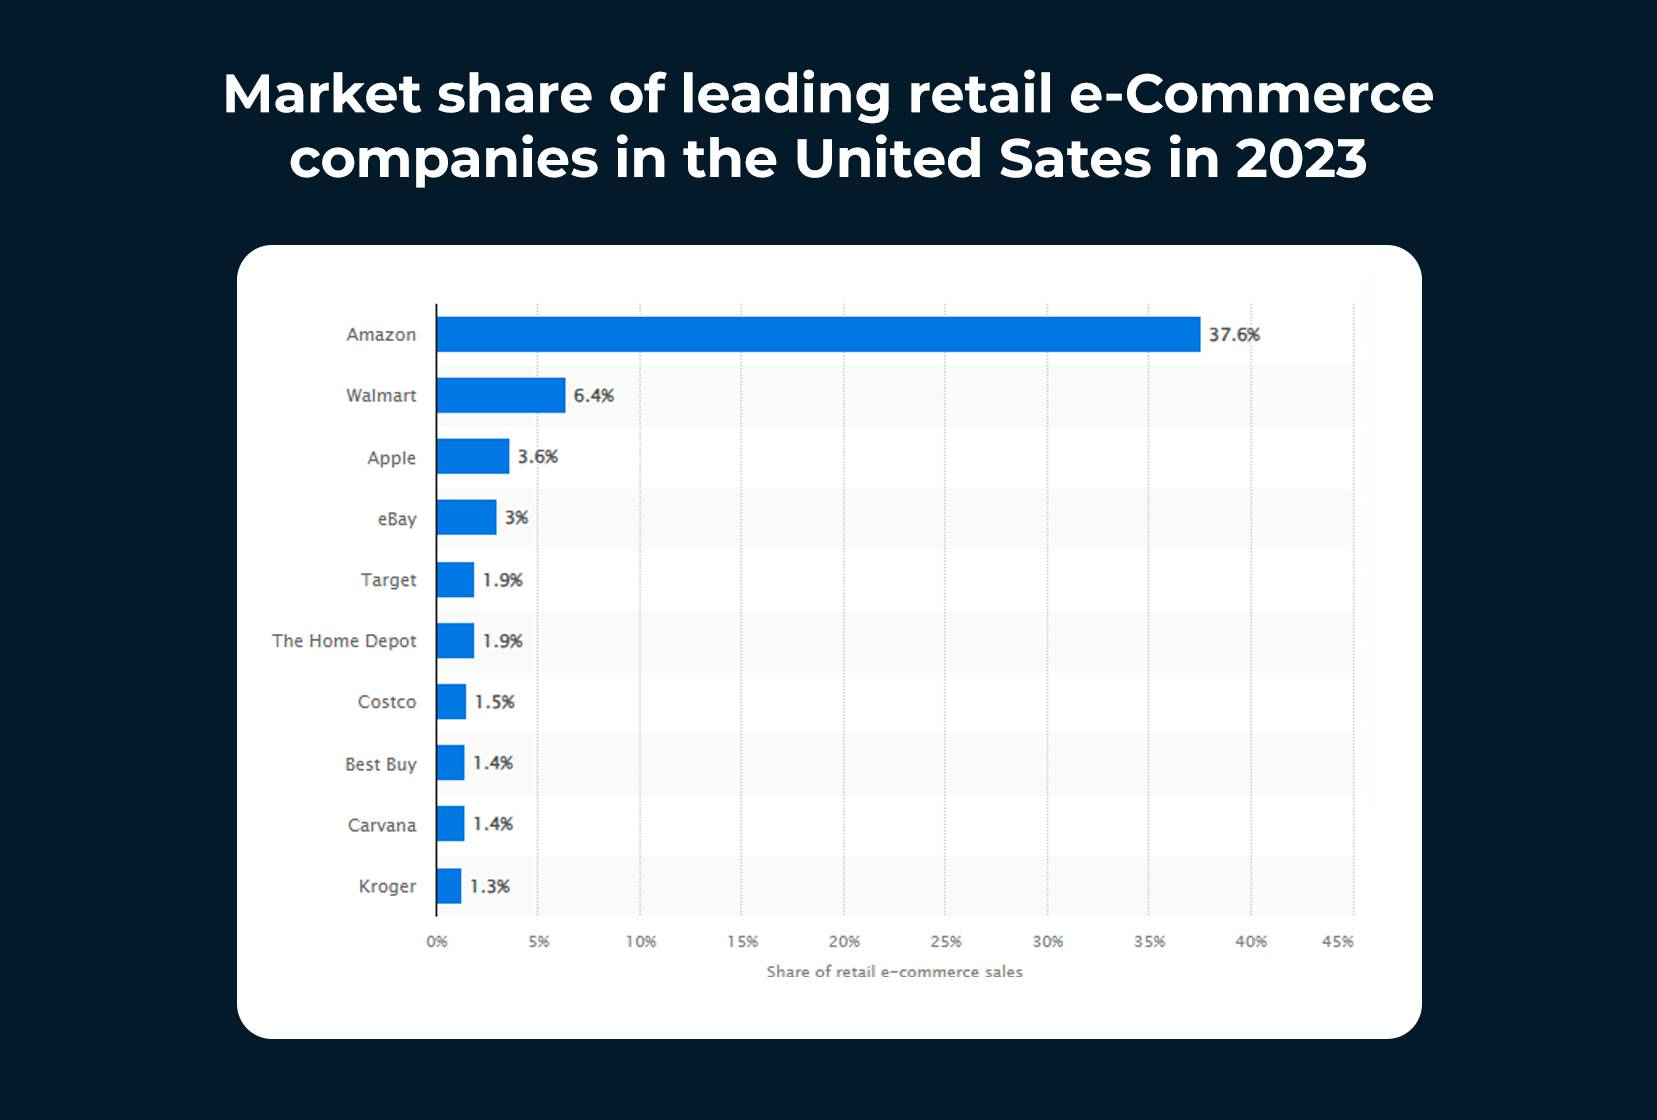 الحصة السوقية لشركات التجارة الإلكترونية الرائدة في مجال البيع بالتجزئة في الولايات المتحدة الأمريكية